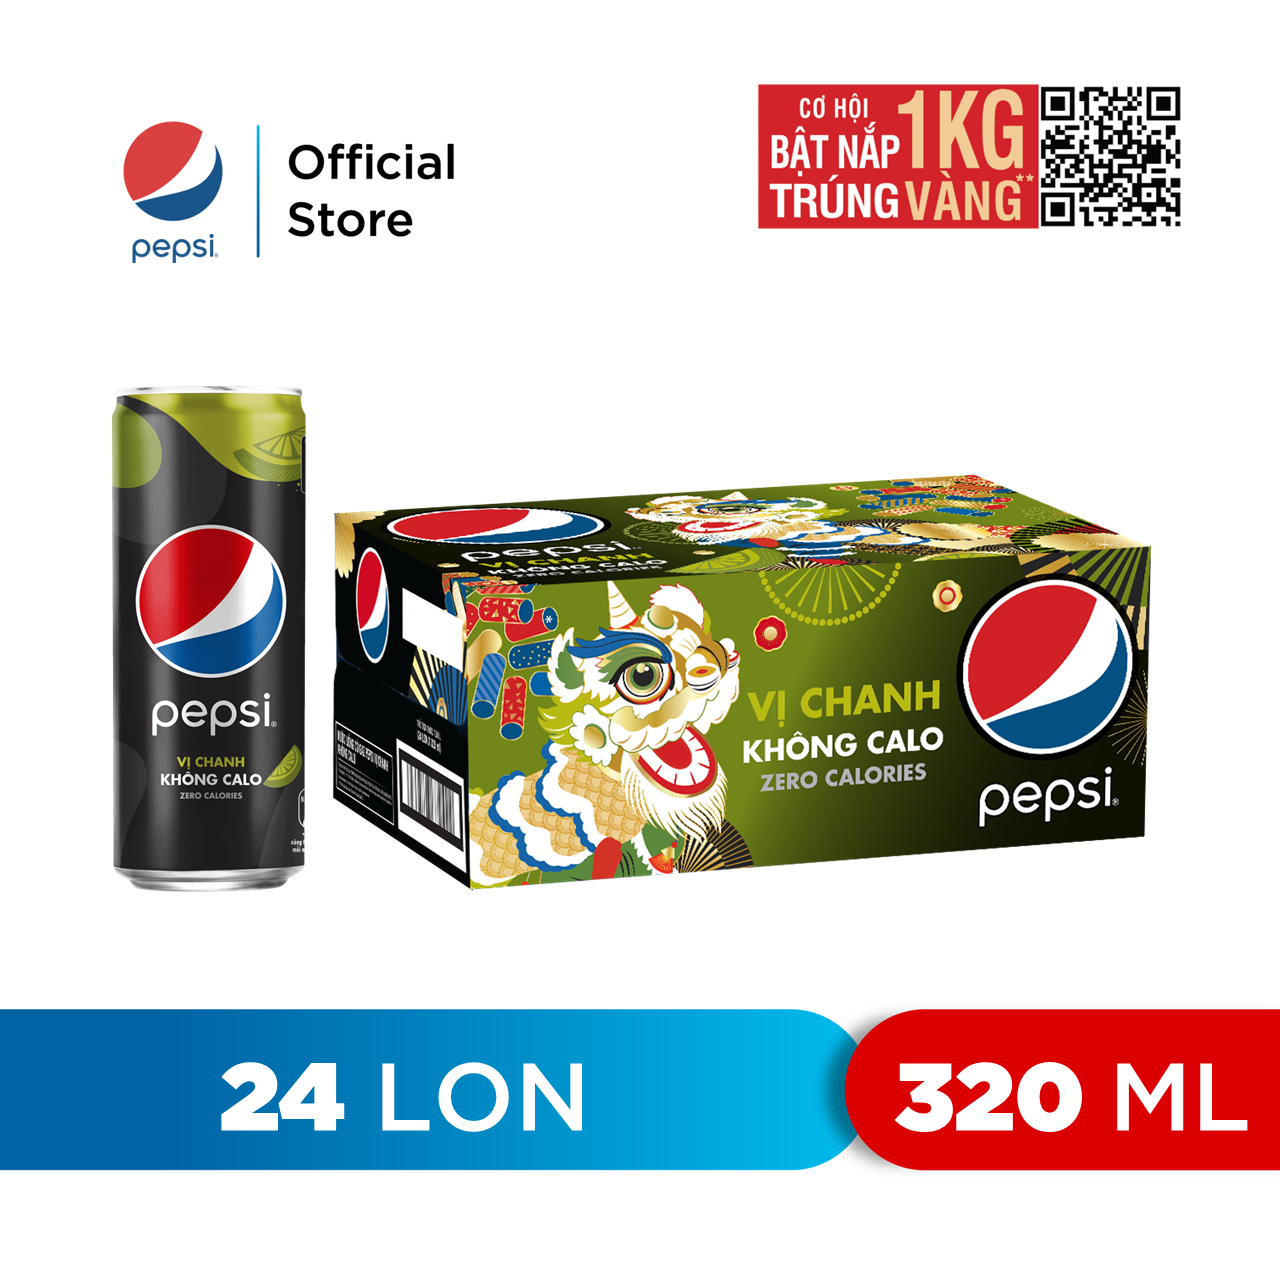 HCM - FREESHIP Thùng 24 Lon Nước Uống Có Gaz Pepsi Vị Chanh Không Calo